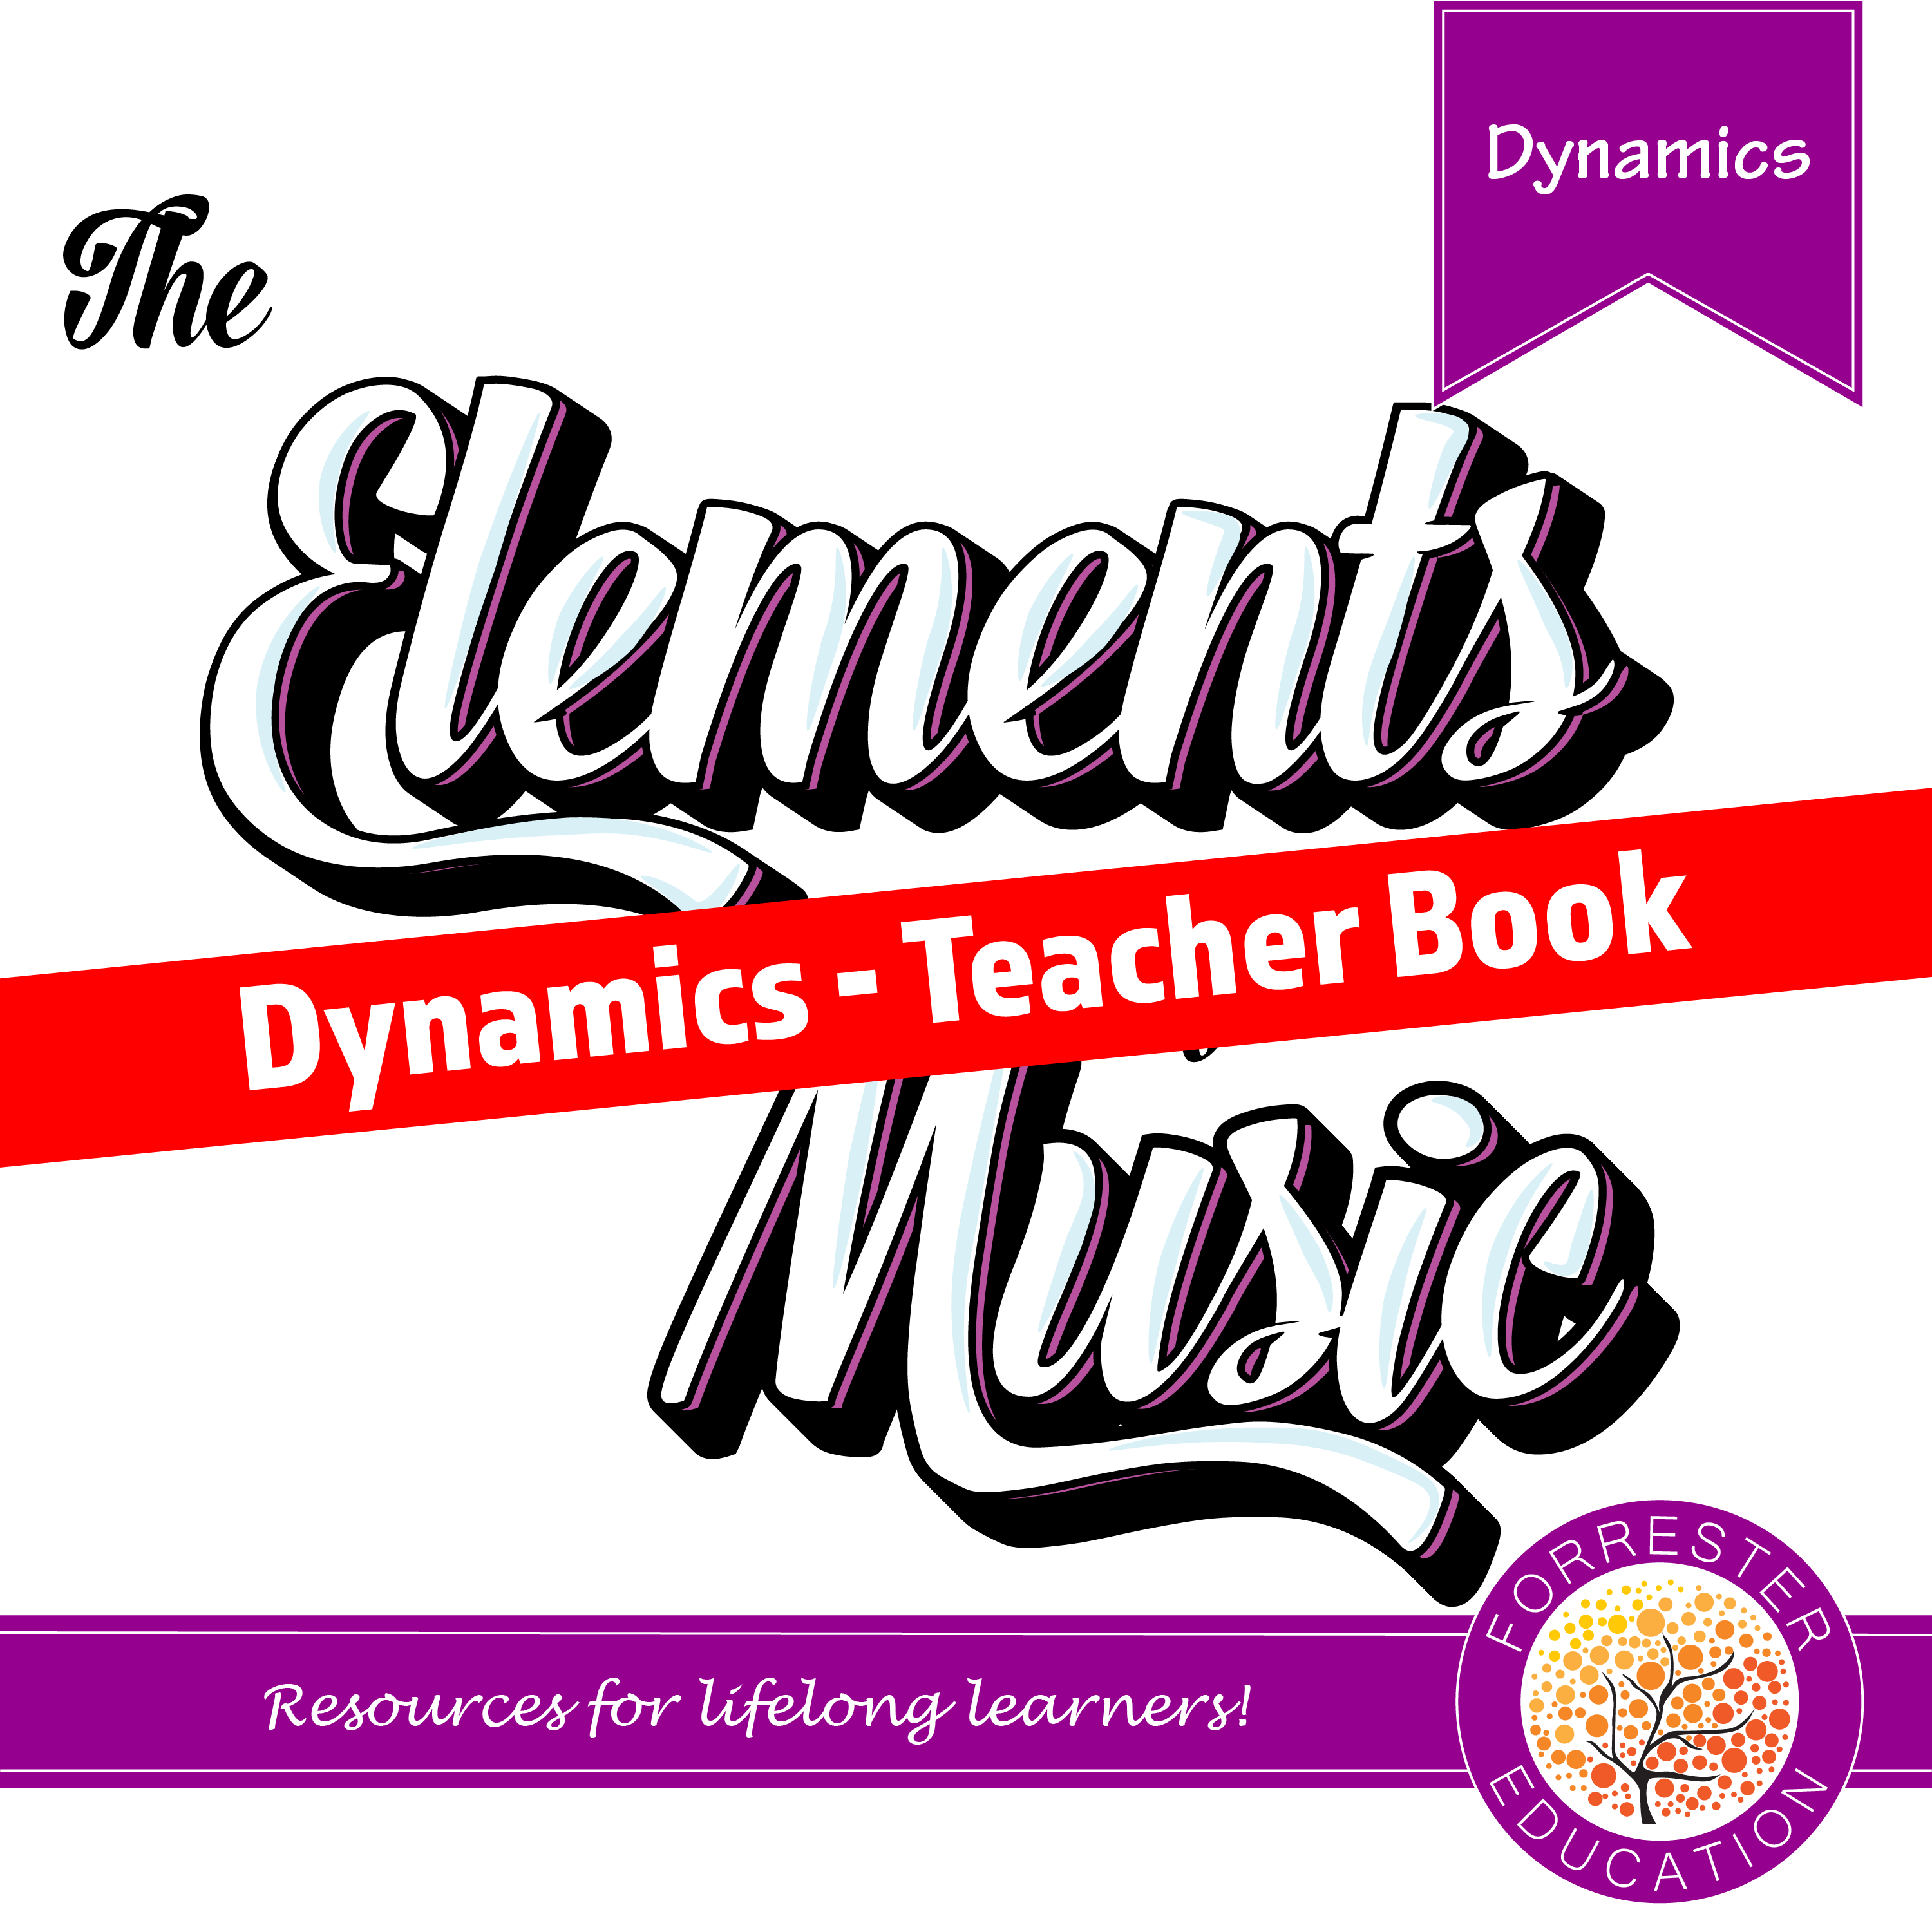 Dynamics - Teacher Book